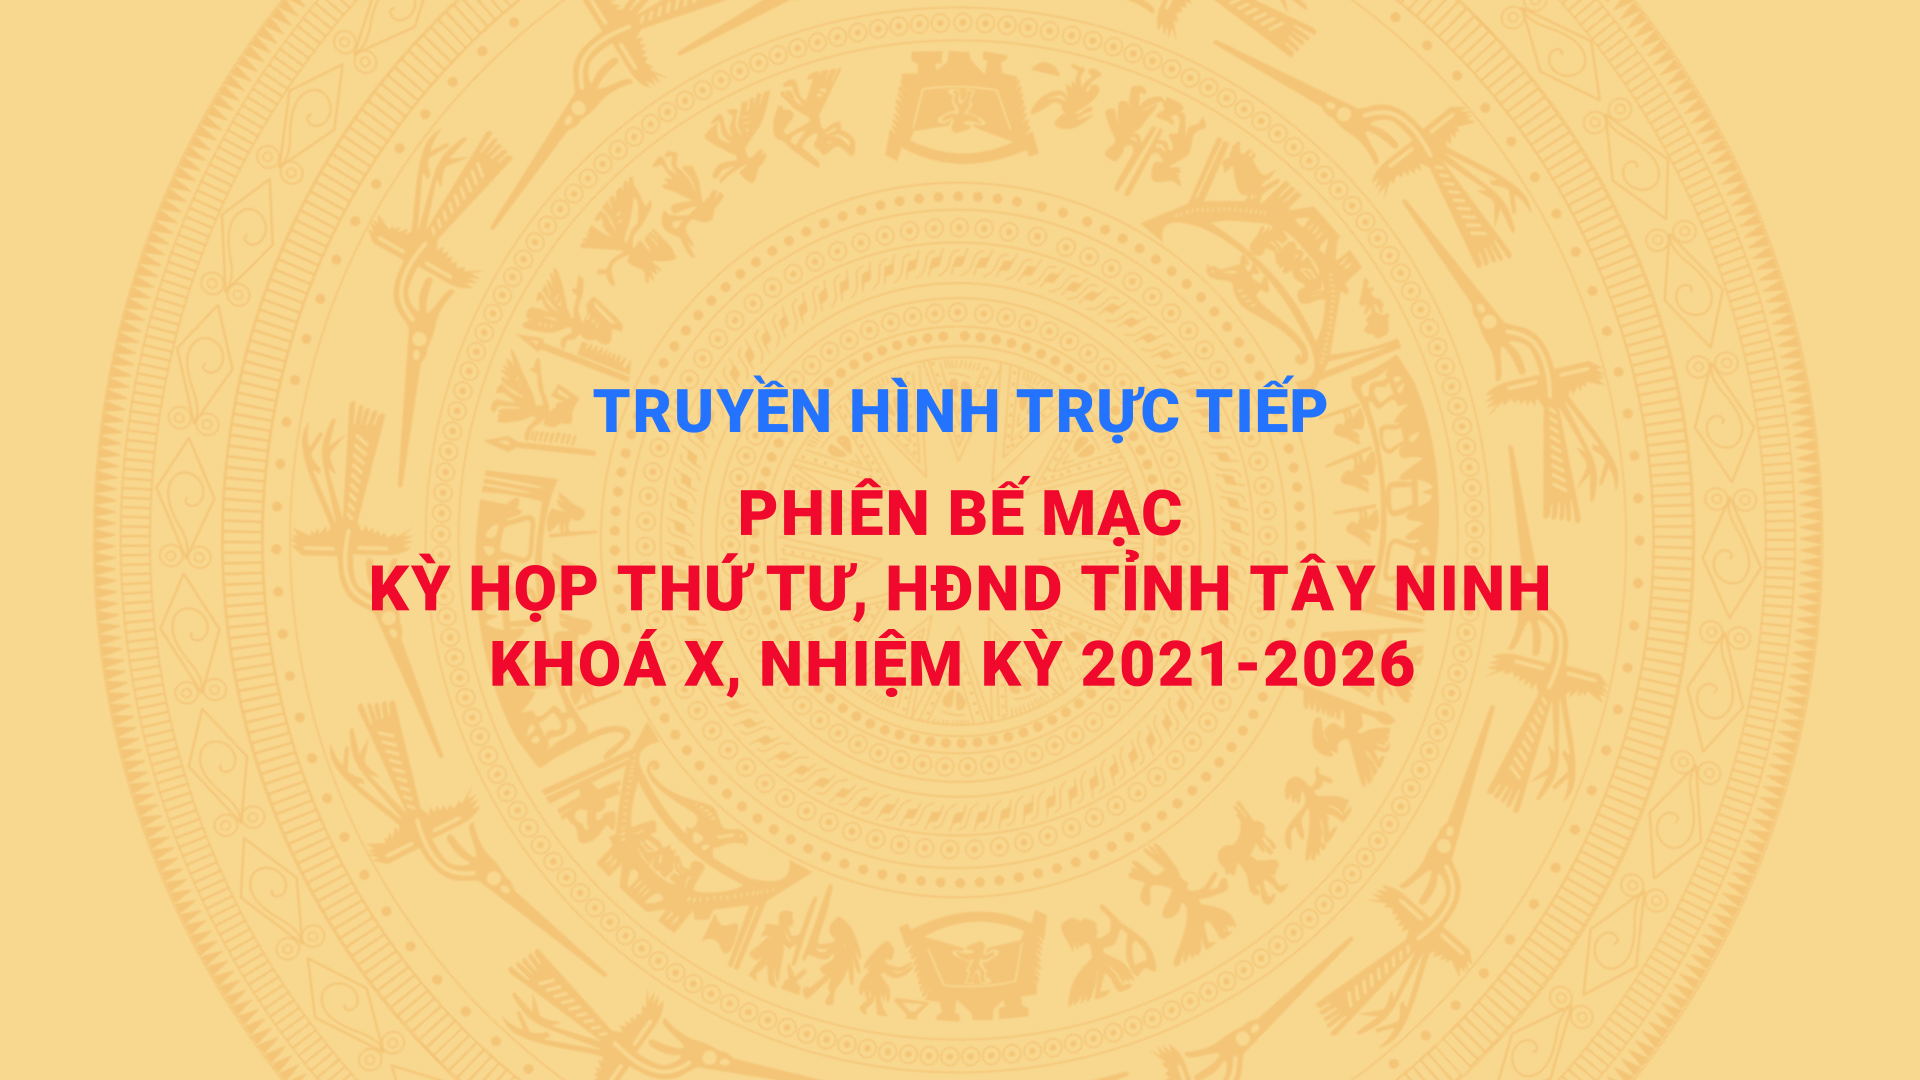 Phiên bế mạc Kỳ họp thứ 4, HĐND tỉnh Tây Ninh khóa X, nhiệm kỳ 2021-2026 | TayNinhTV